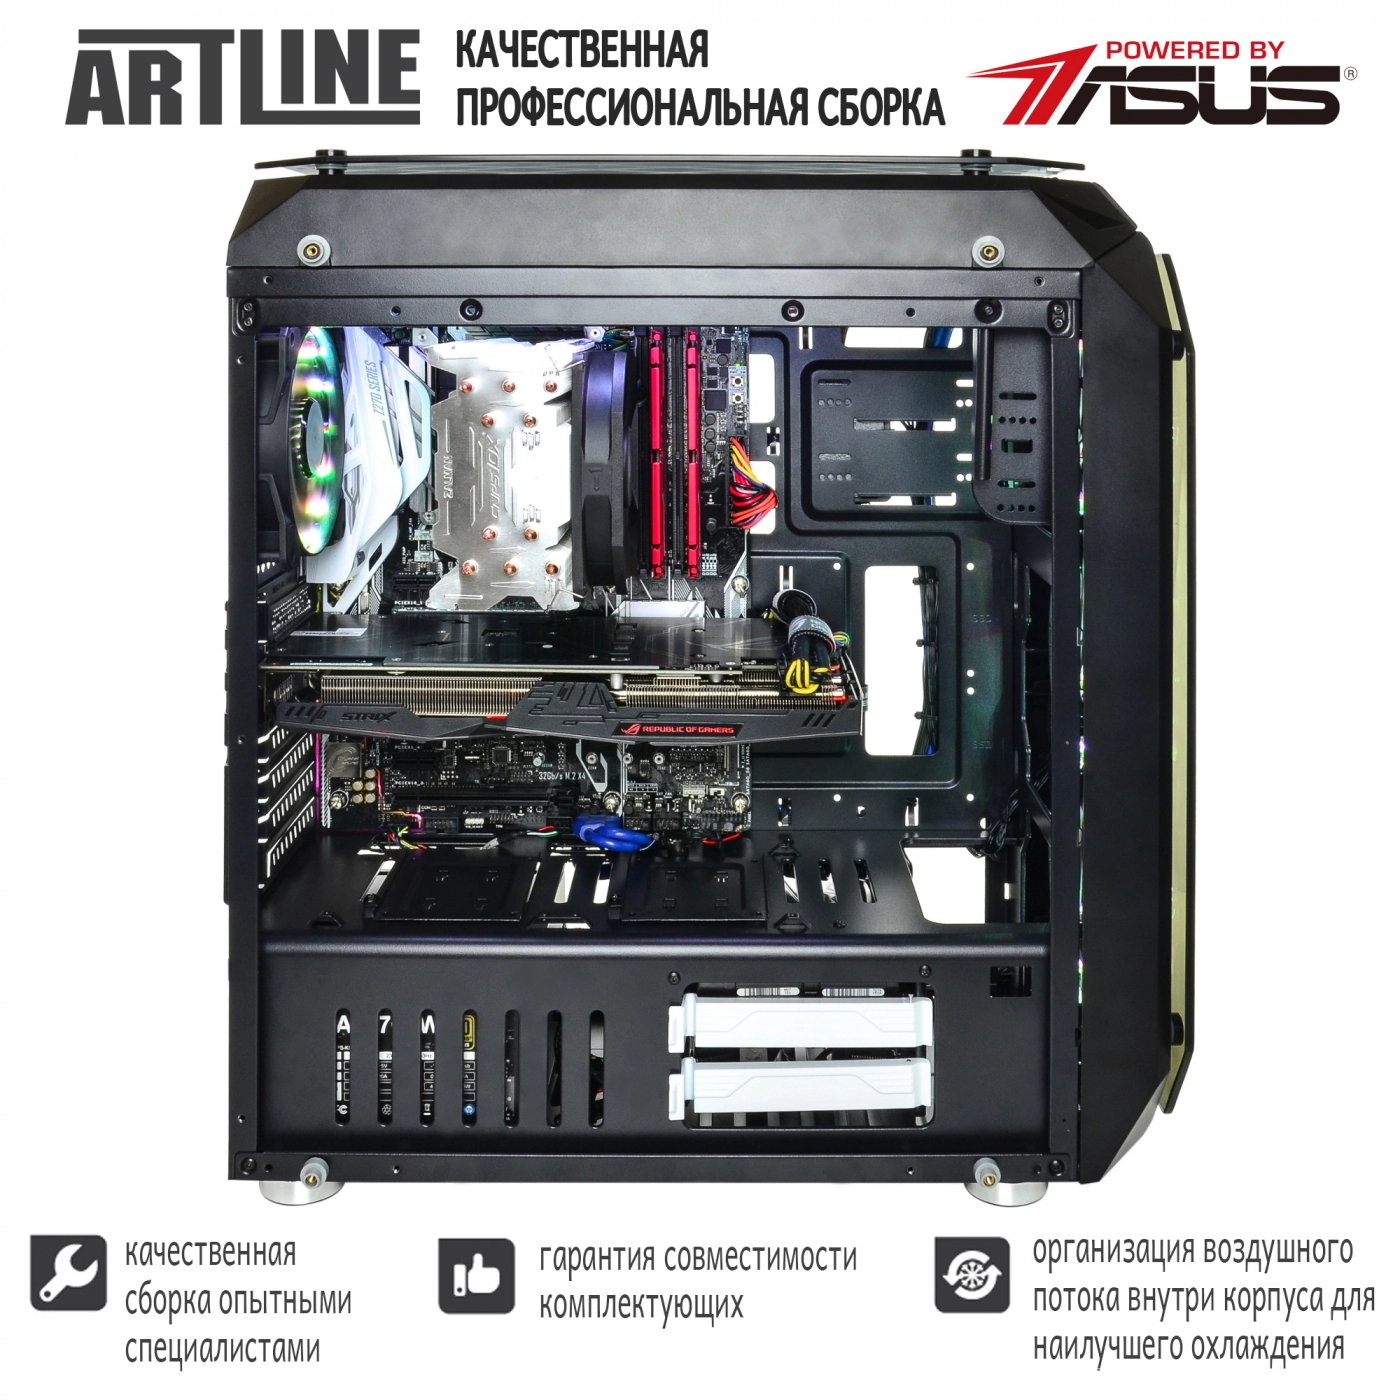 Купить Компьютер ARTLINE Gaming X95v25 - фото 5